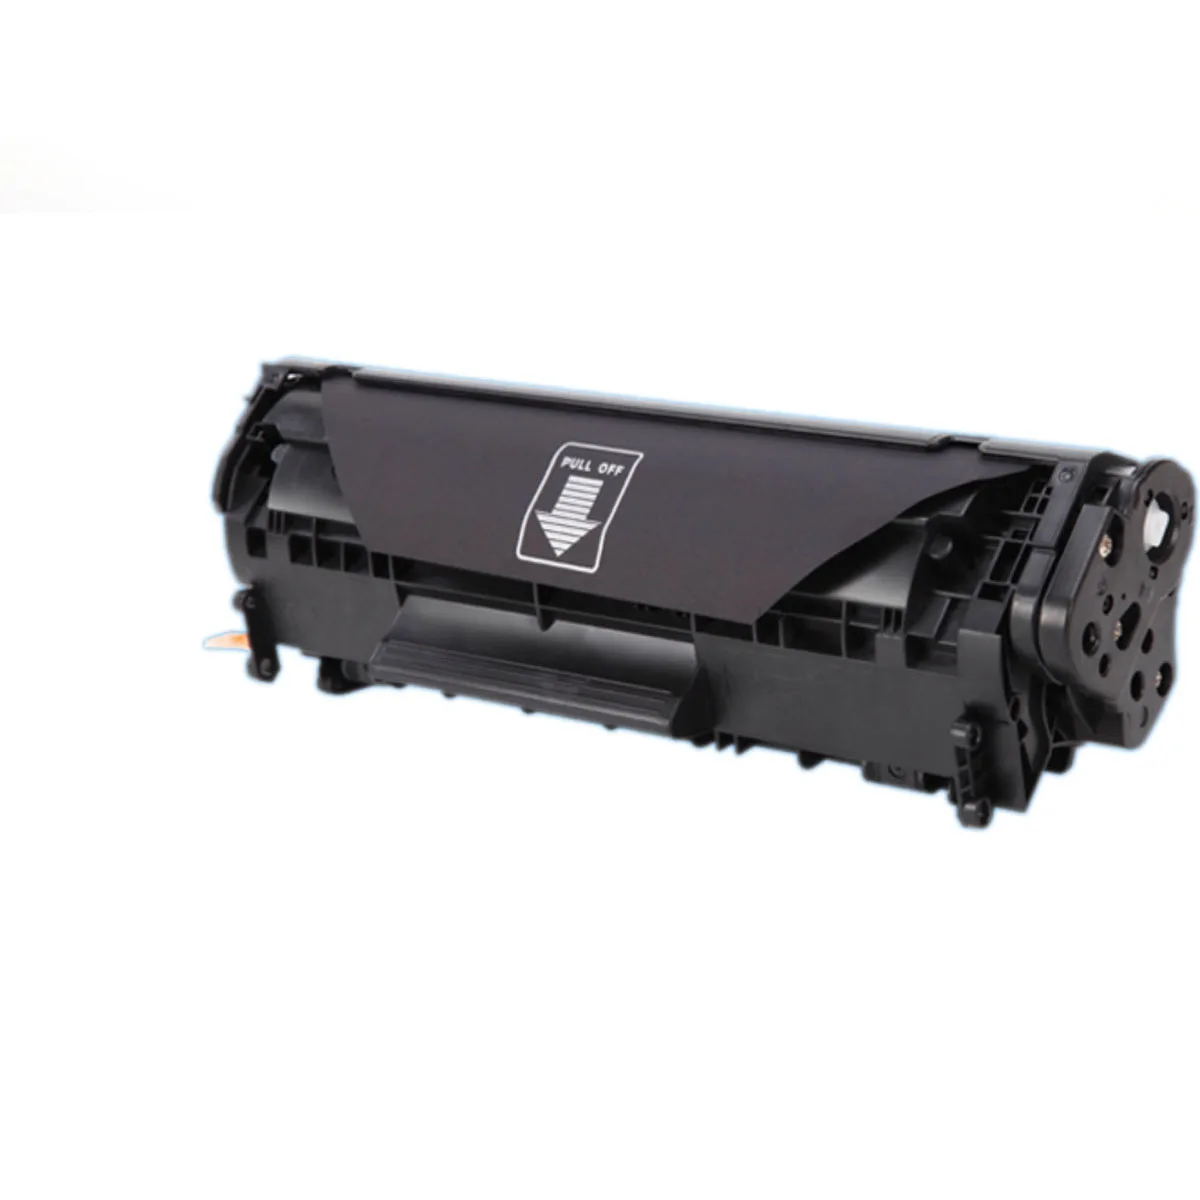 

New Toner Cartridge for Canon i-SENSYS i SENSYS iSENSYS ImageClass IC Satera Laser Shot Fax D-420 D-460 D-480 D-490 MF-4 d dn pl